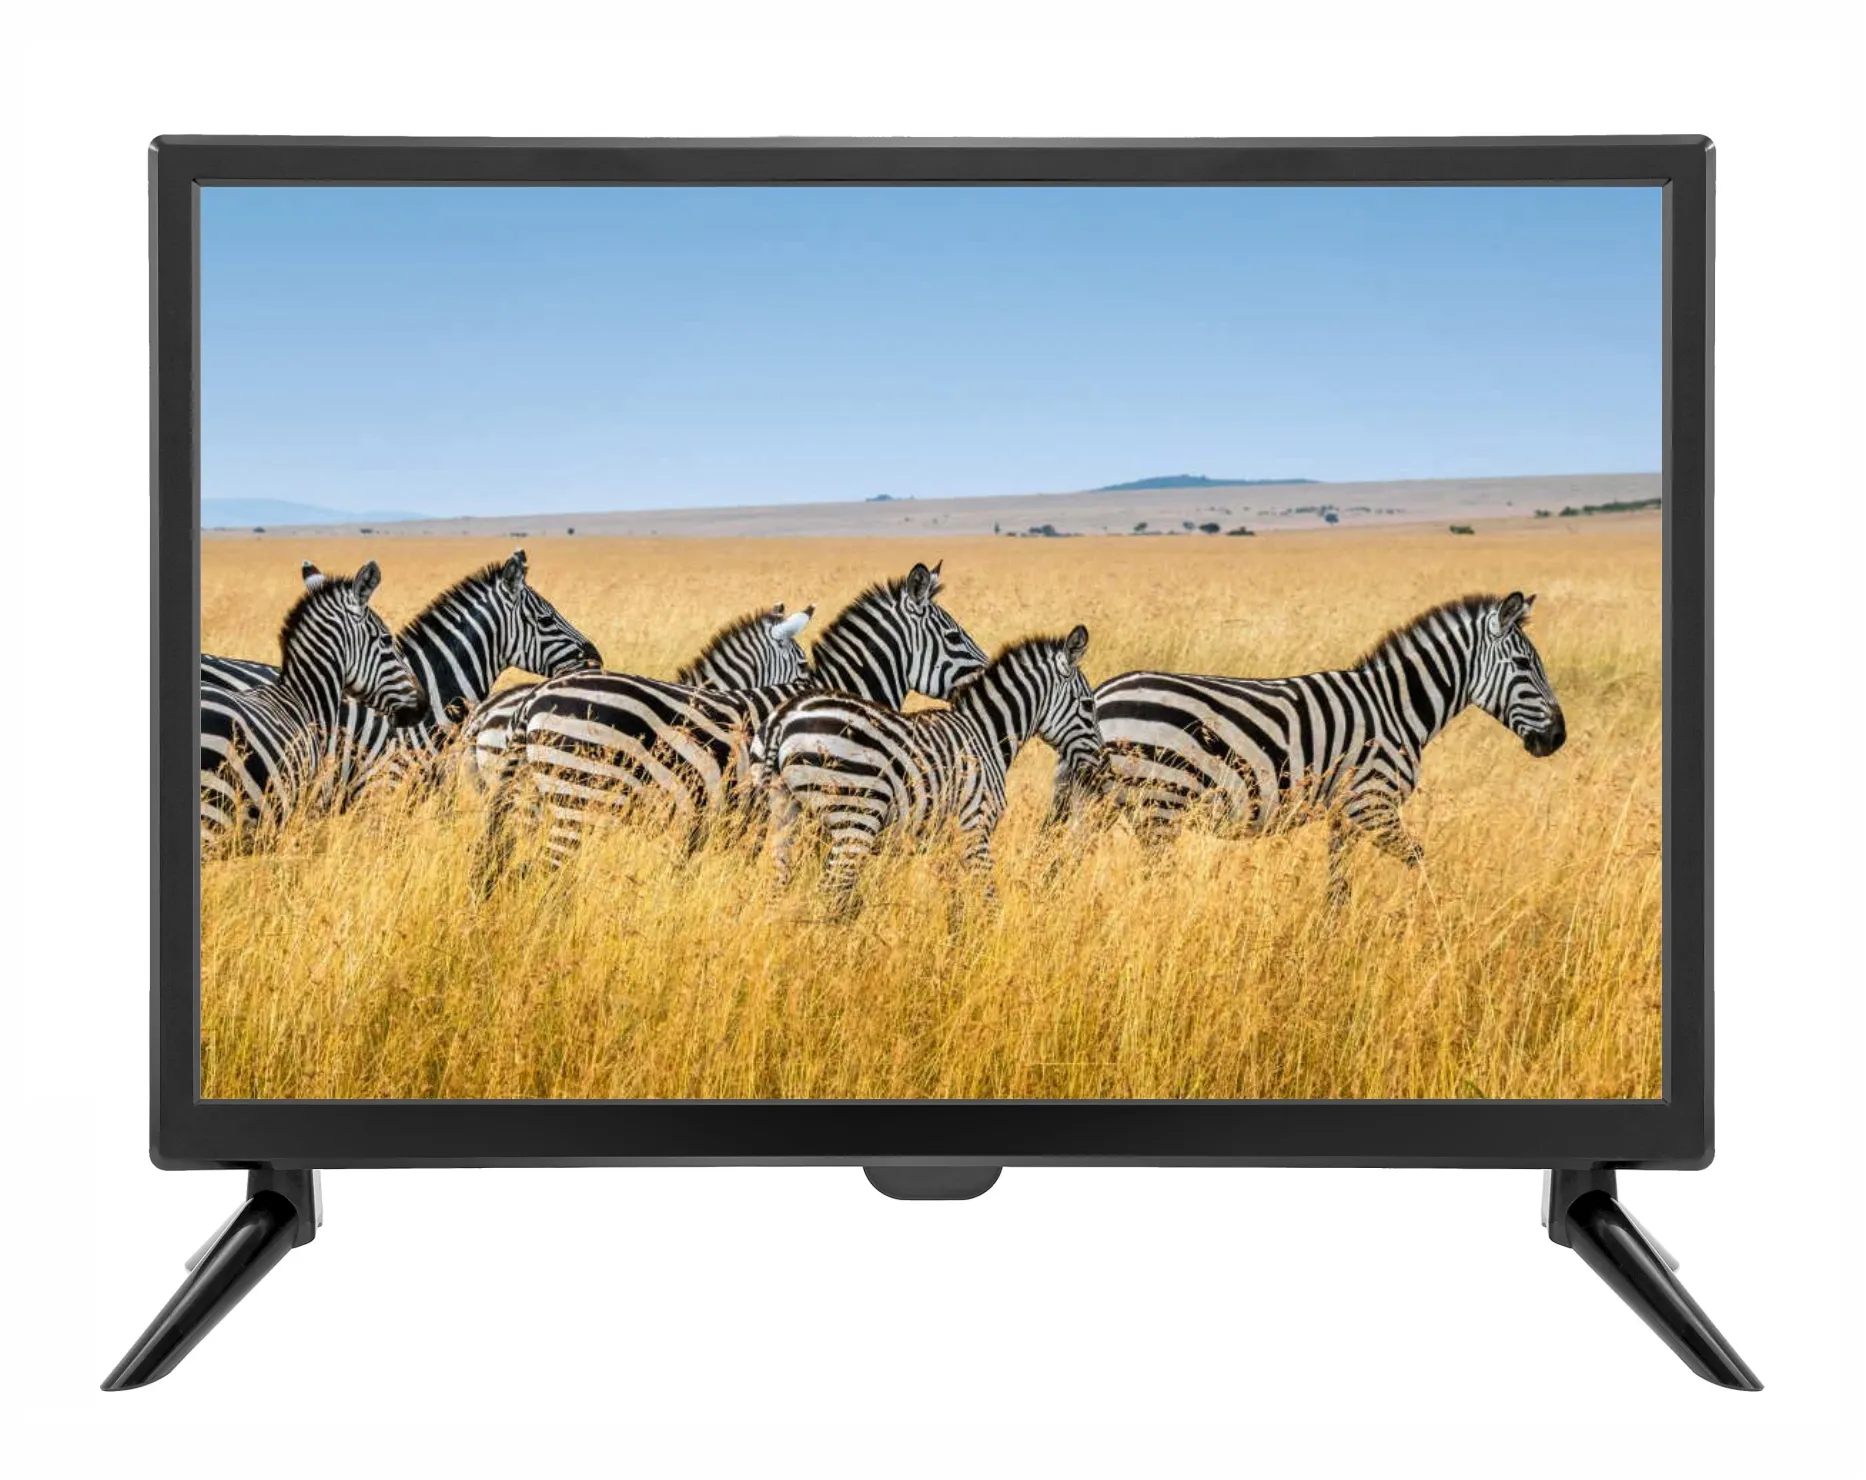 ขายร้อน 24 นิ้ว LED และ LCD ทีวีโทรทัศน์ภายในบ้านเทคโนโลยี HDMI LED ด้านหลังในครัวเรือน 32 นิ้วหน้าจอ LED Tv Non HD HDTV